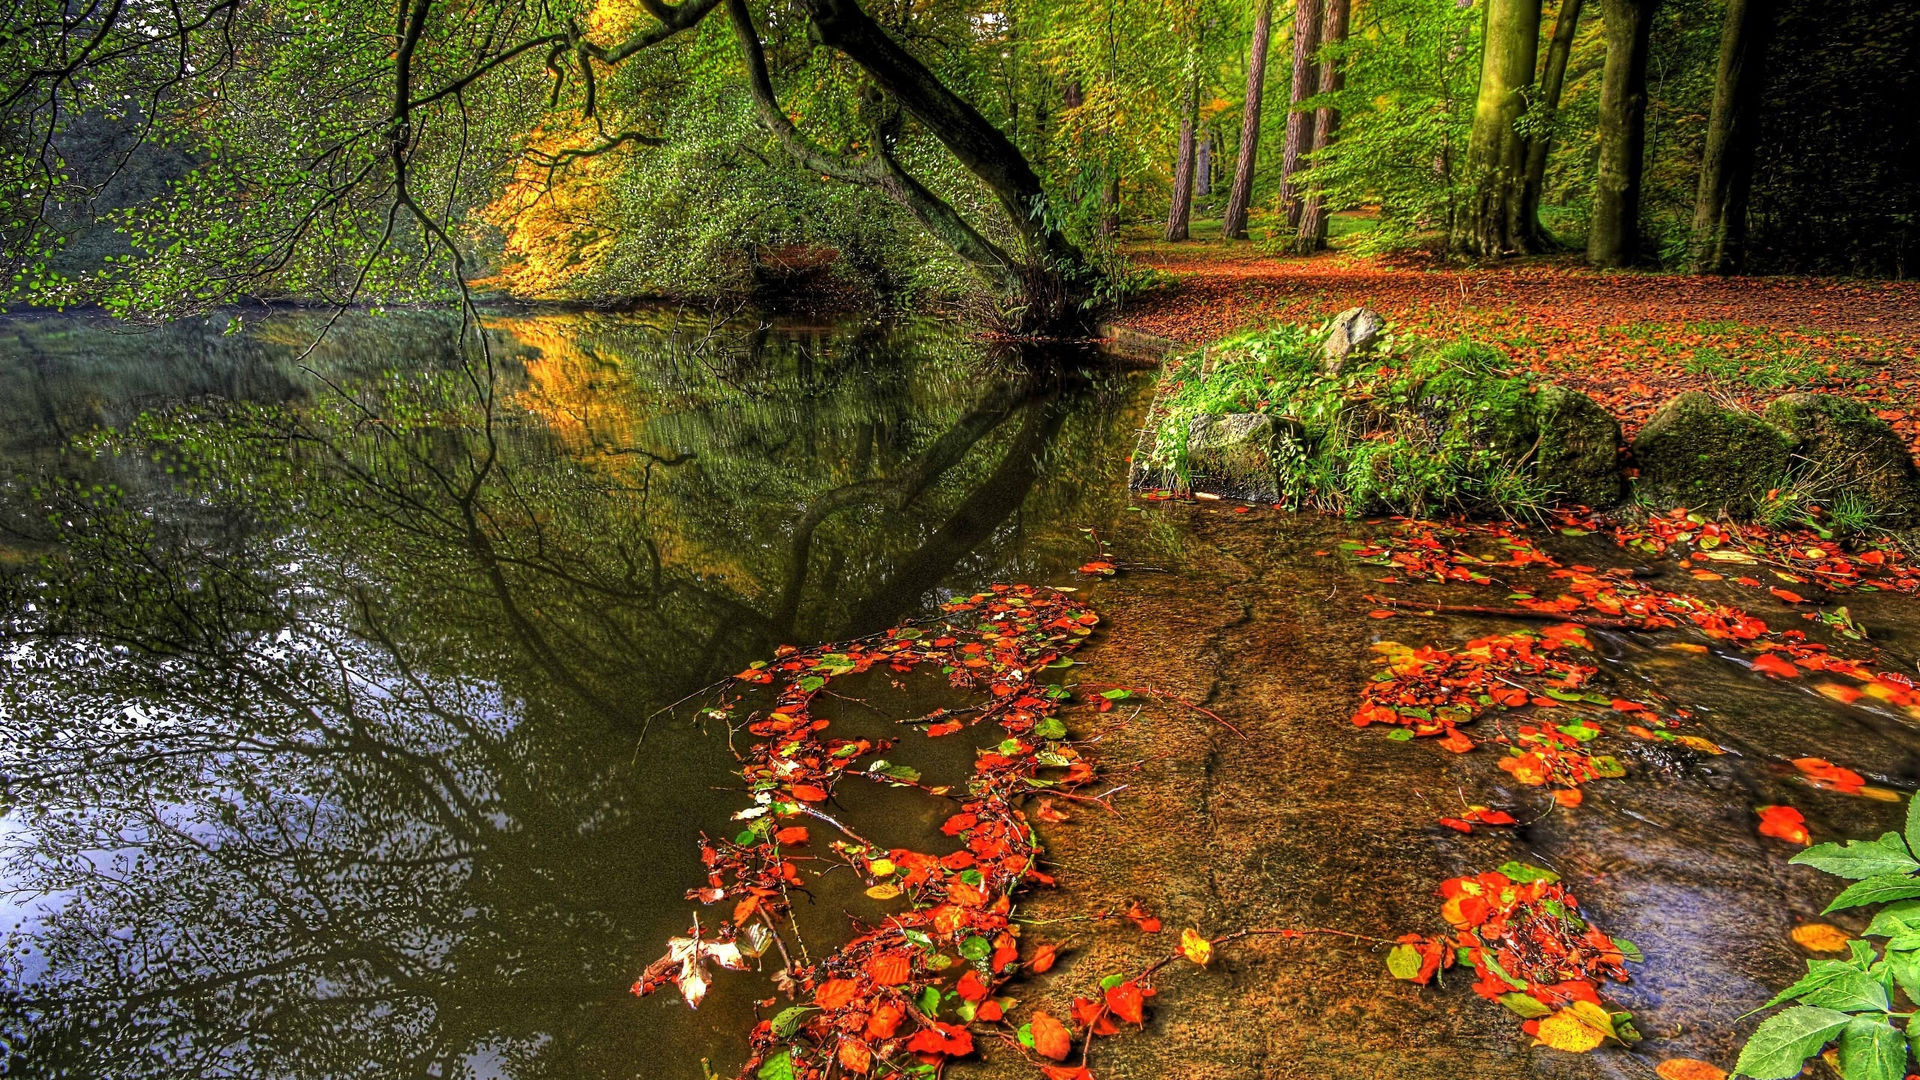 Осенний пейзаж, желтые листья, река, скачать обои осени 1920x1080 высокого  качества